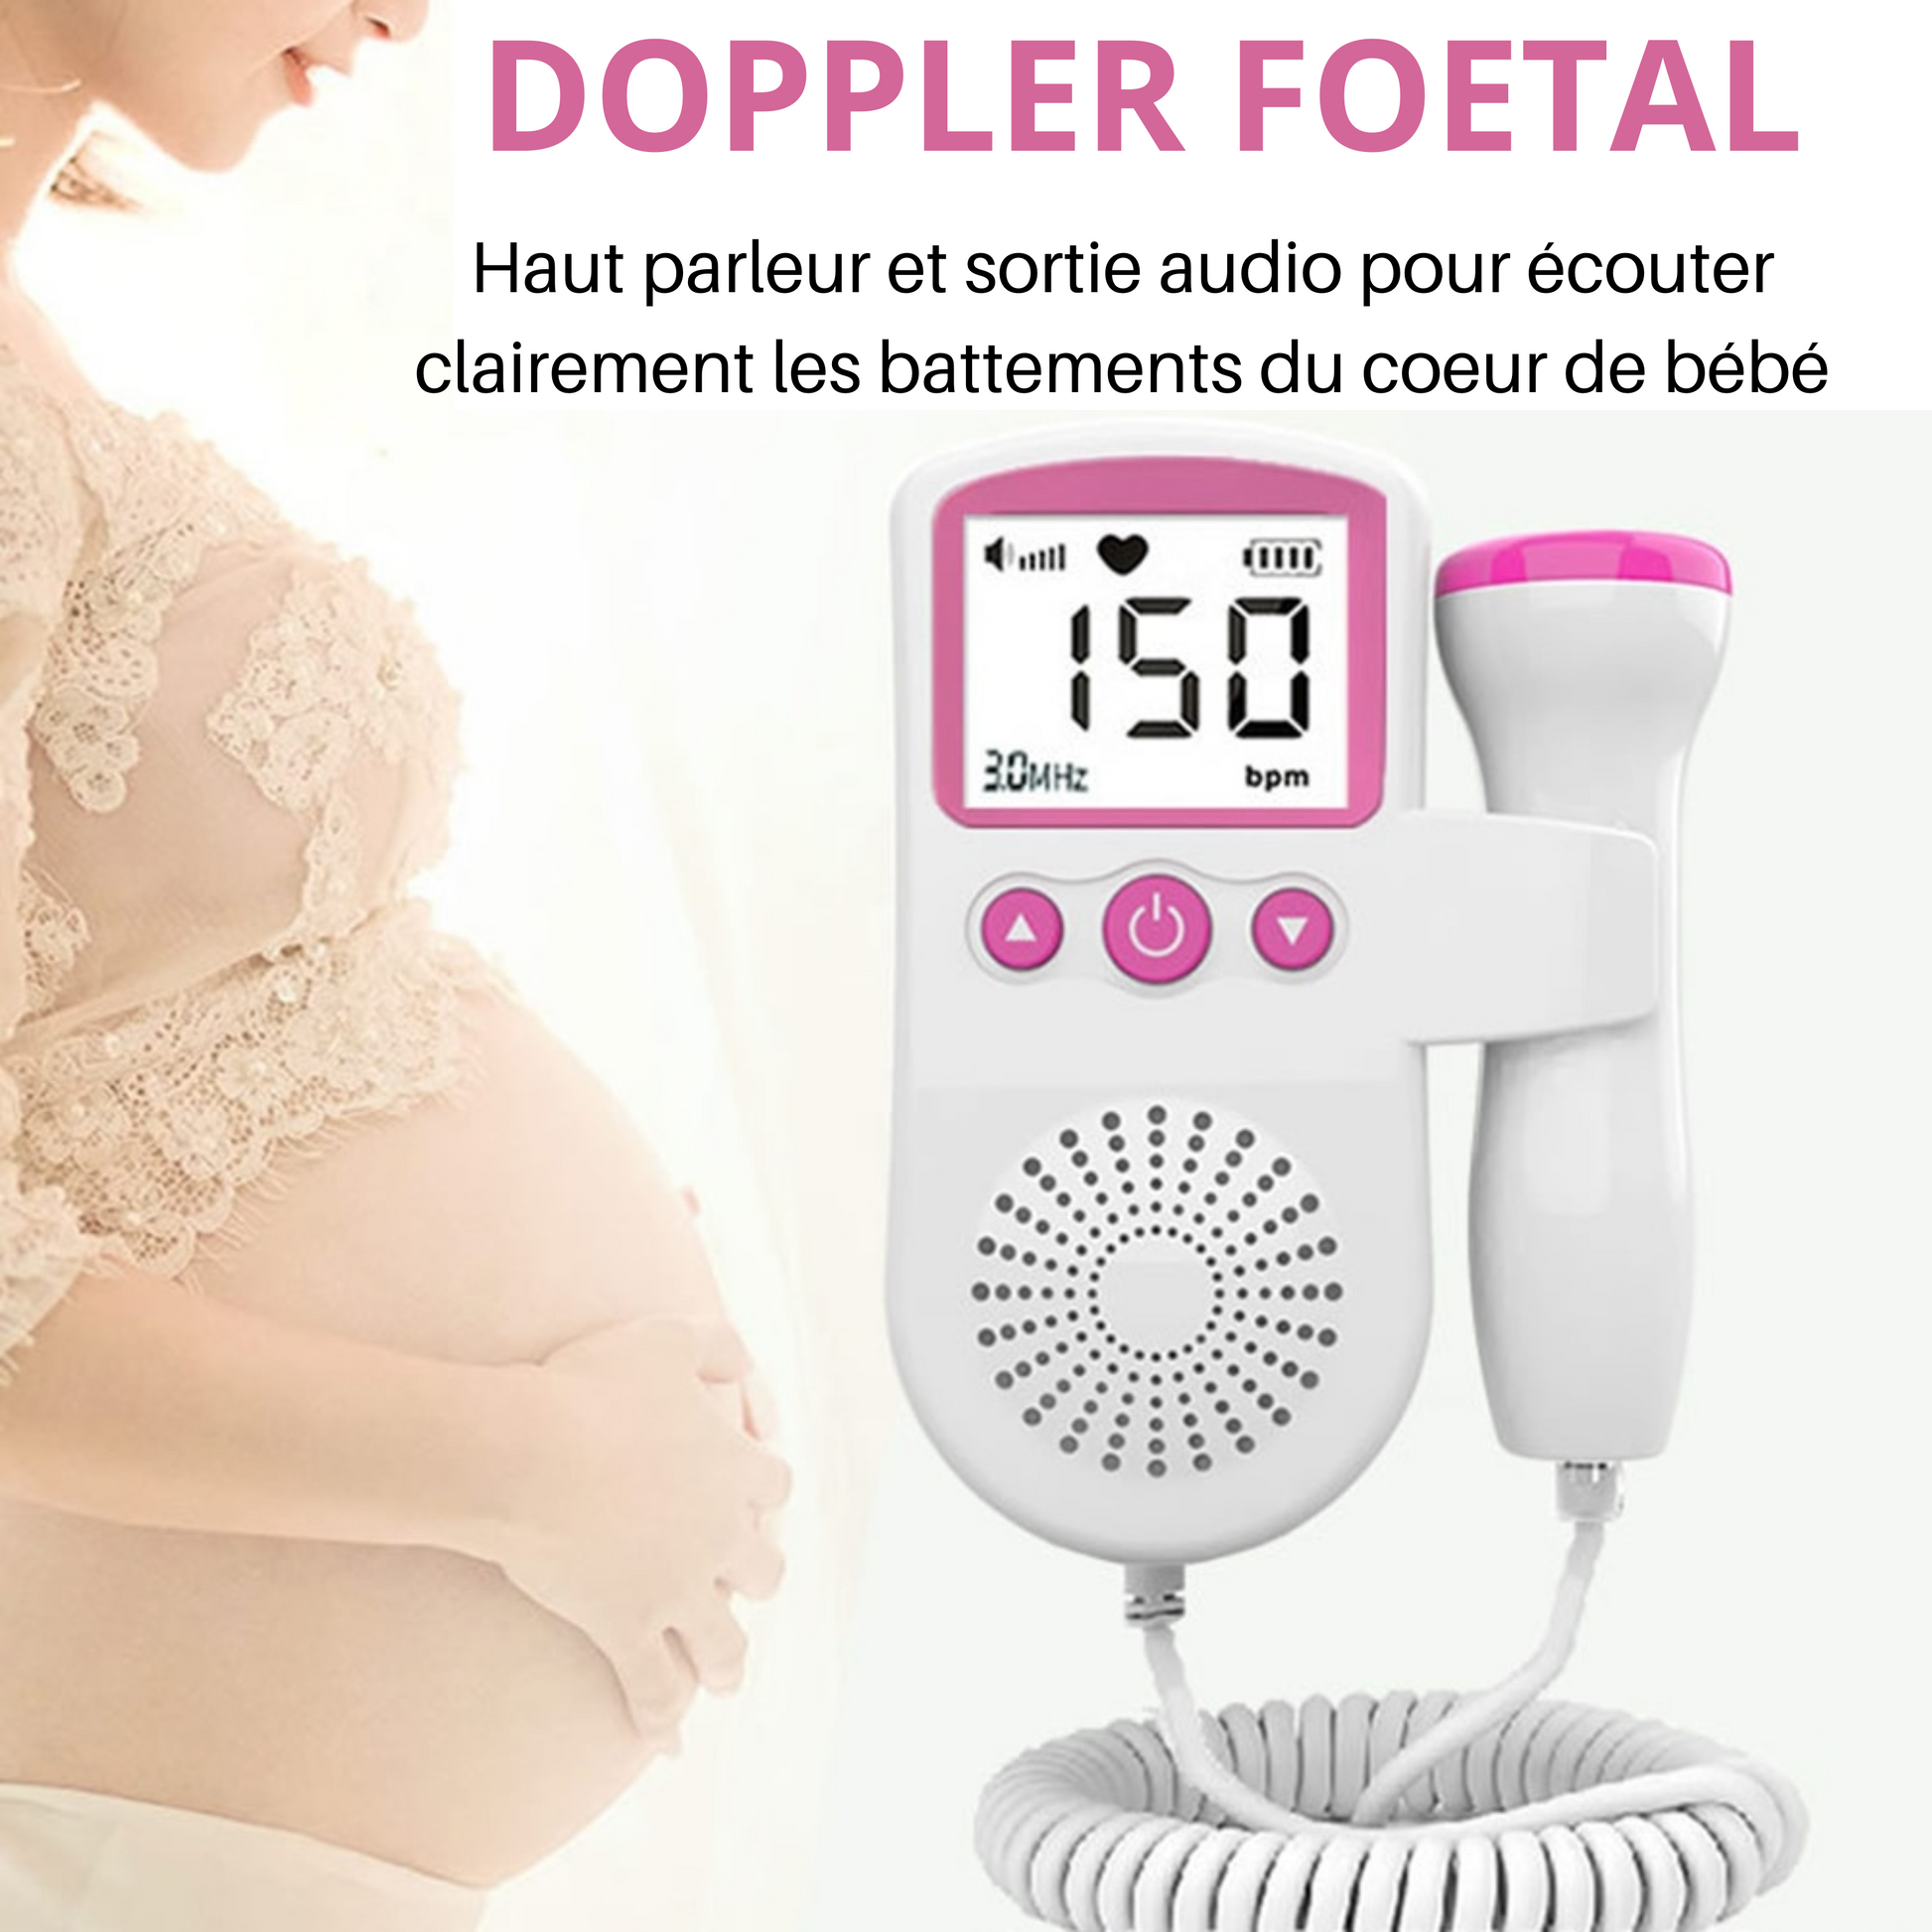 Doppler foetal DG2